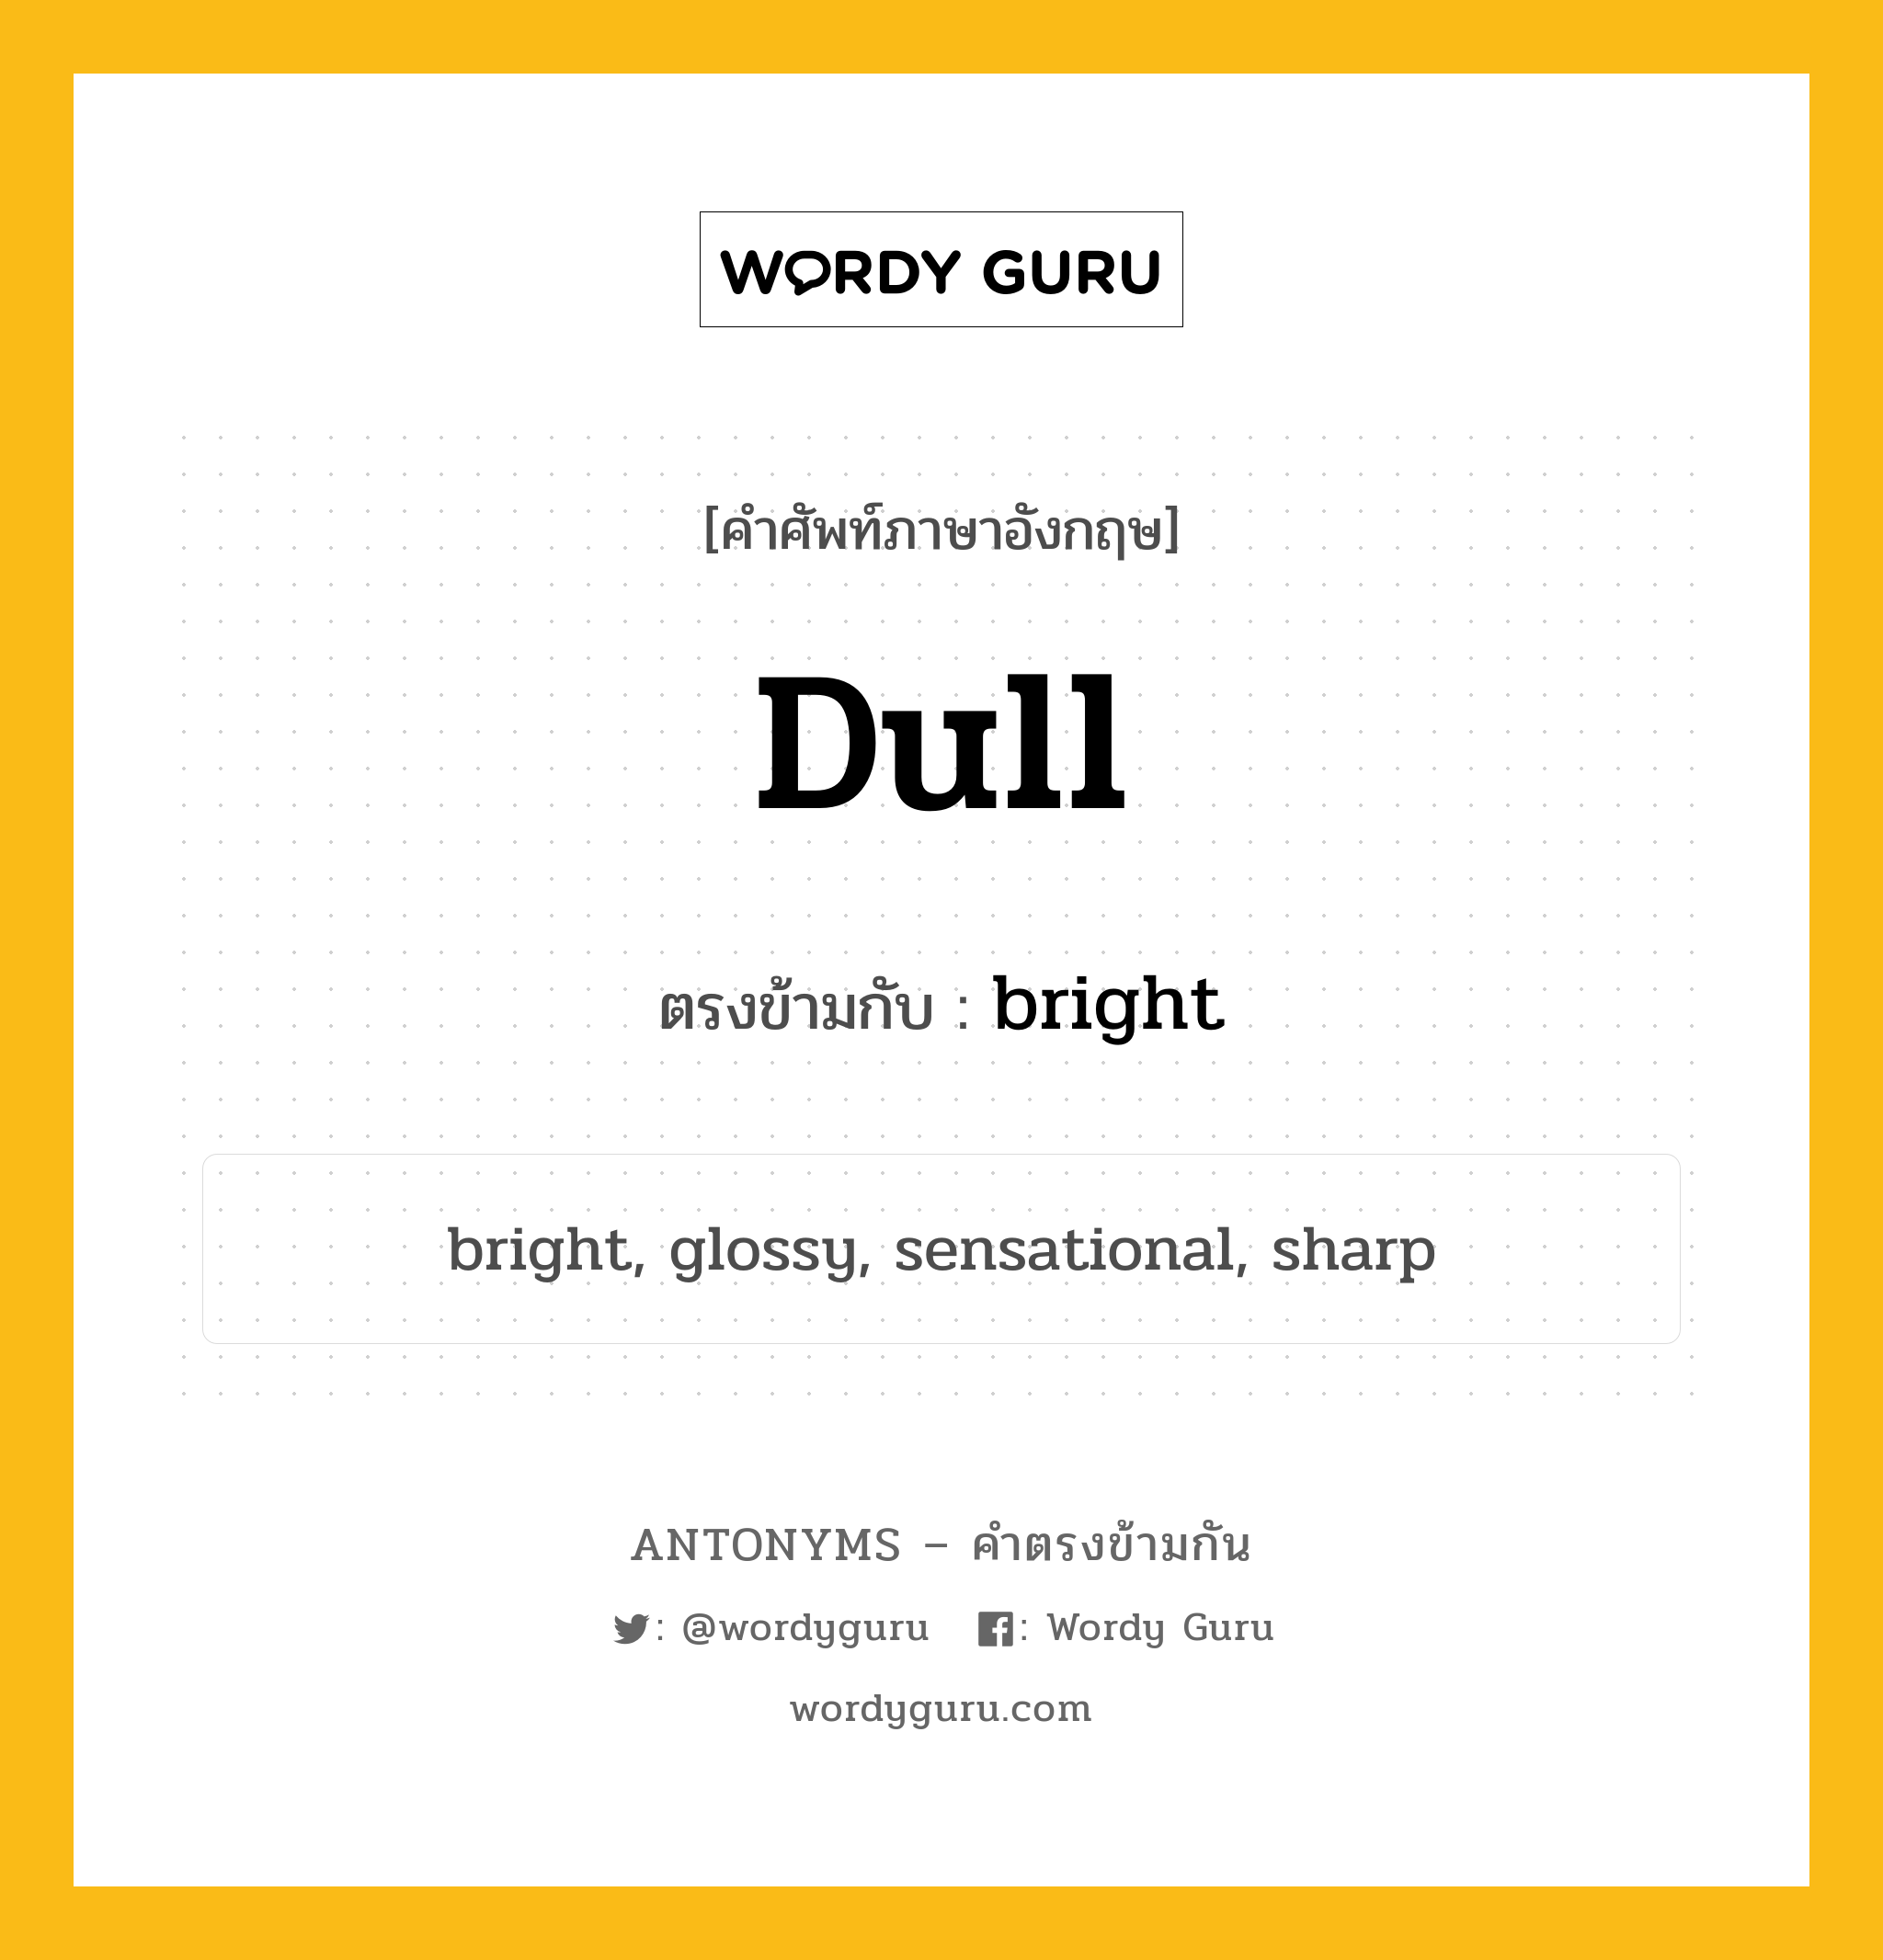 dull เป็นคำตรงข้ามกับคำไหนบ้าง?, คำศัพท์ภาษาอังกฤษ dull ตรงข้ามกับ bright หมวด bright